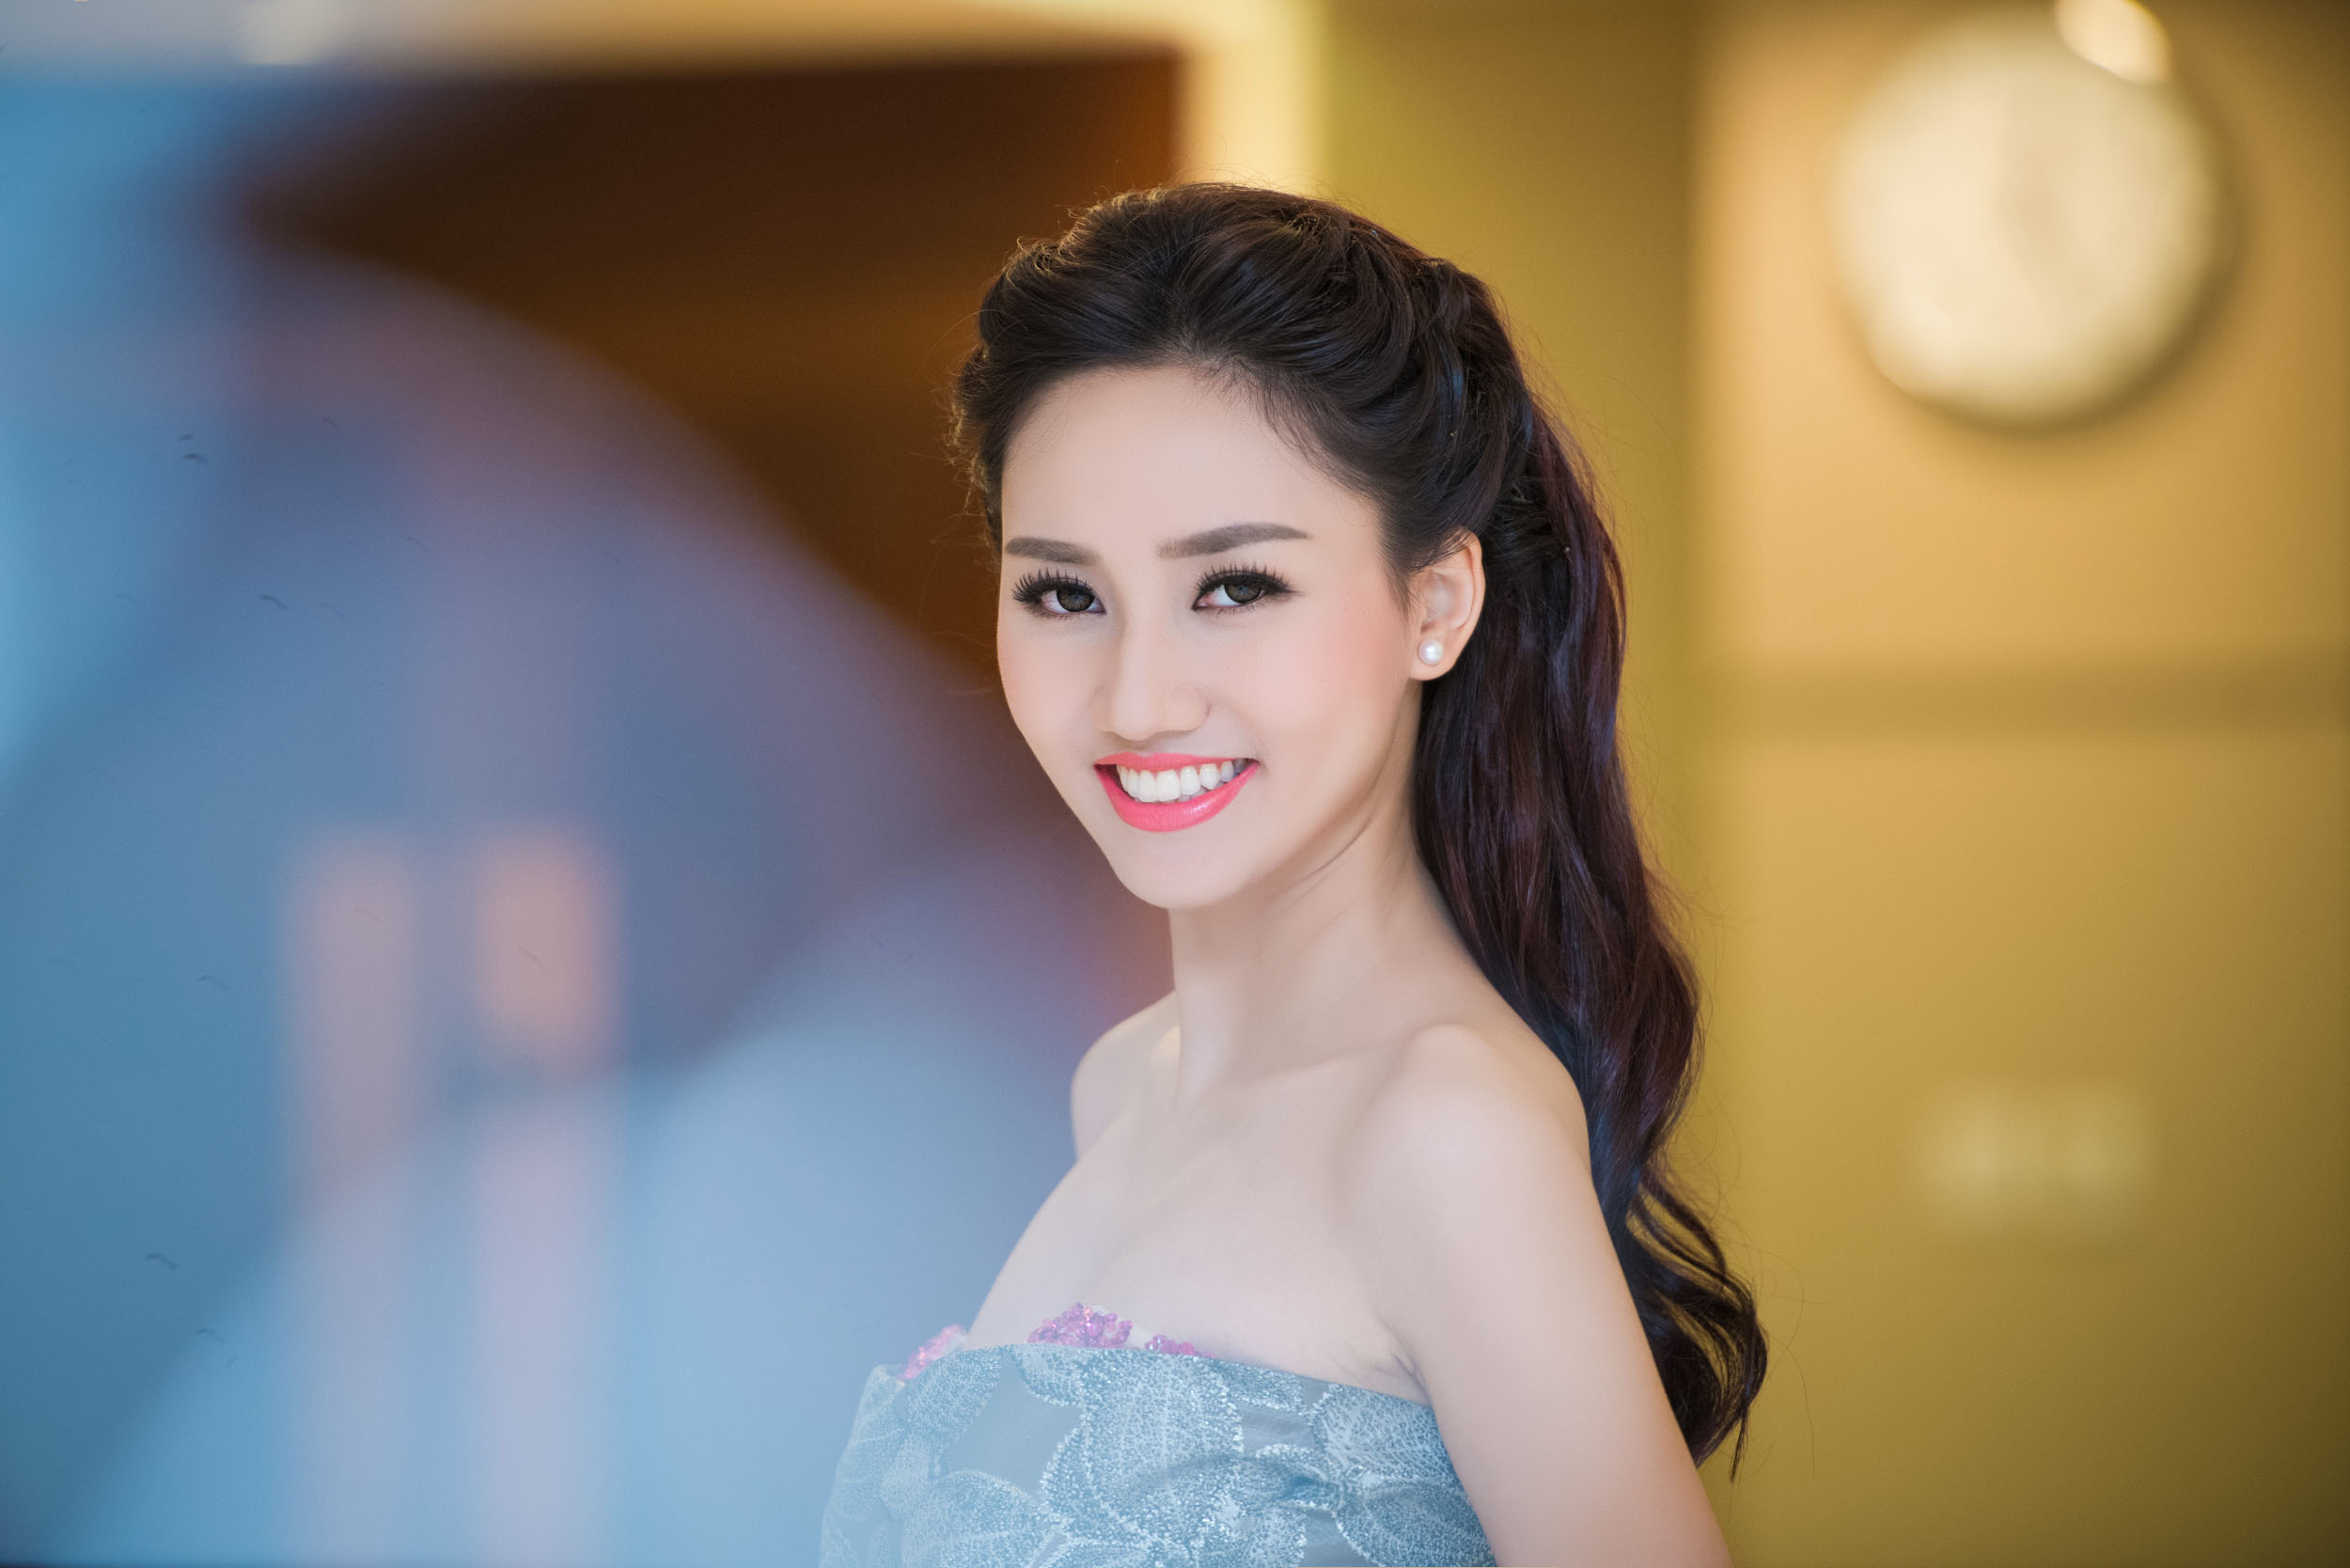 Á hậu Ngô Trà My sinh năm 1992 tại Hà Nội, cô tốt nghiệp Đại học Thăng Long chuyên ngành Tài chính ngân hàng. 